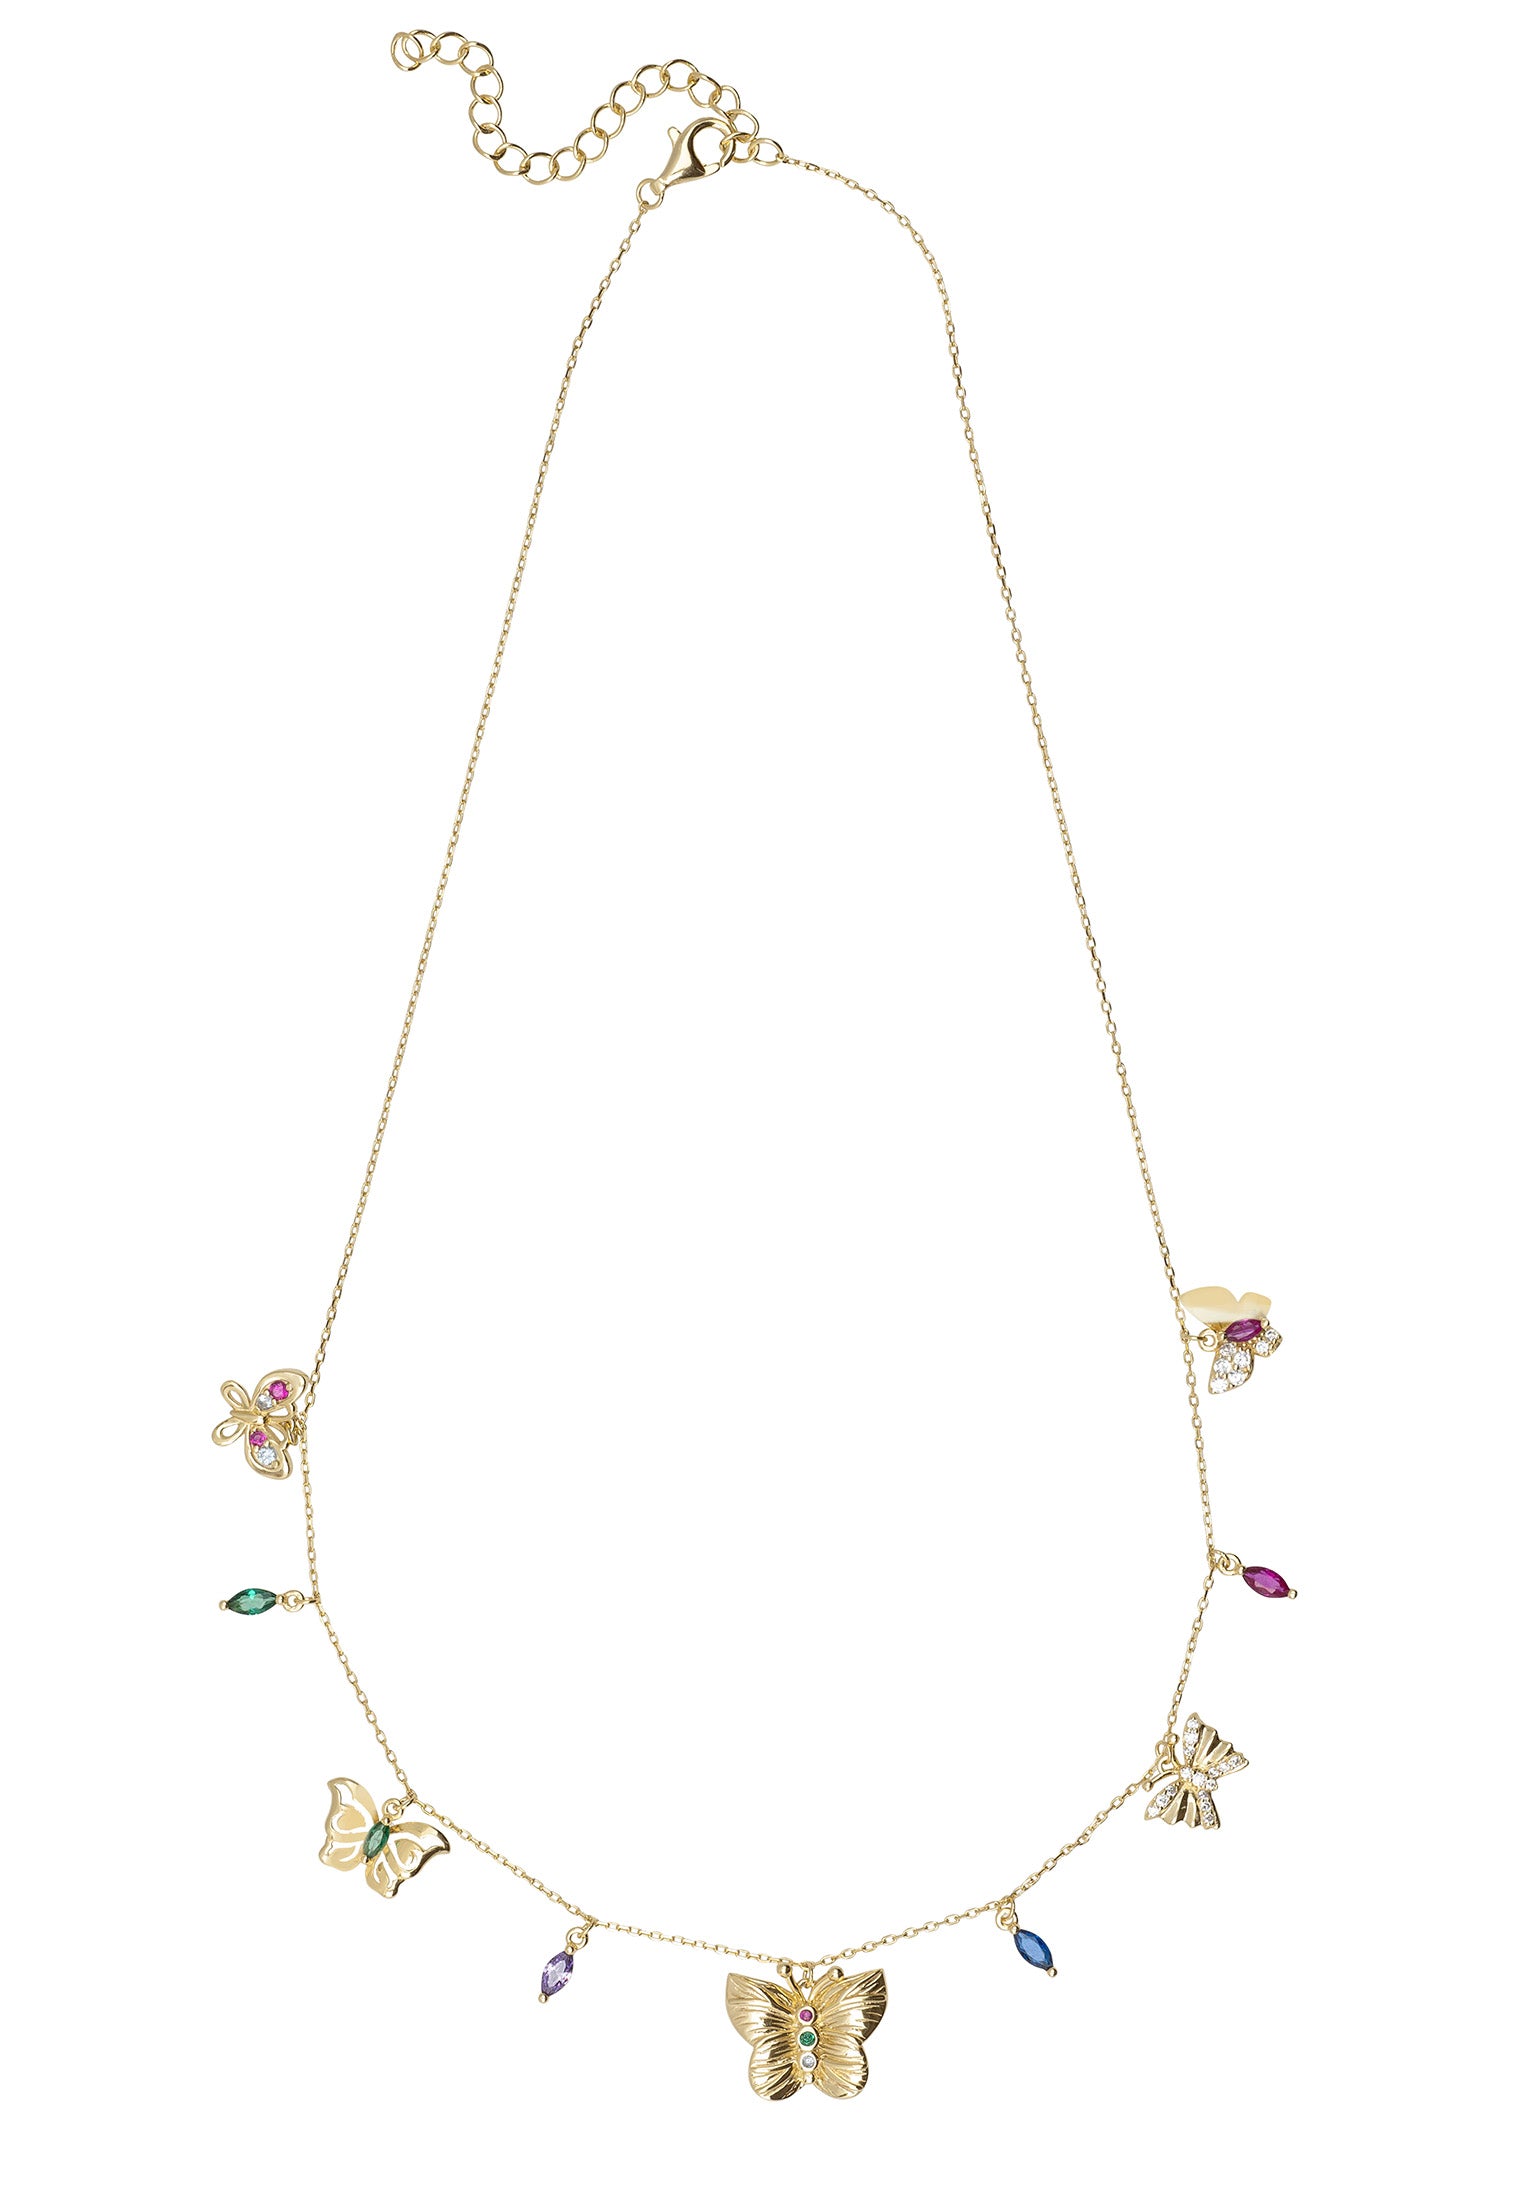 Rainbow Butterflies Necklace Gold